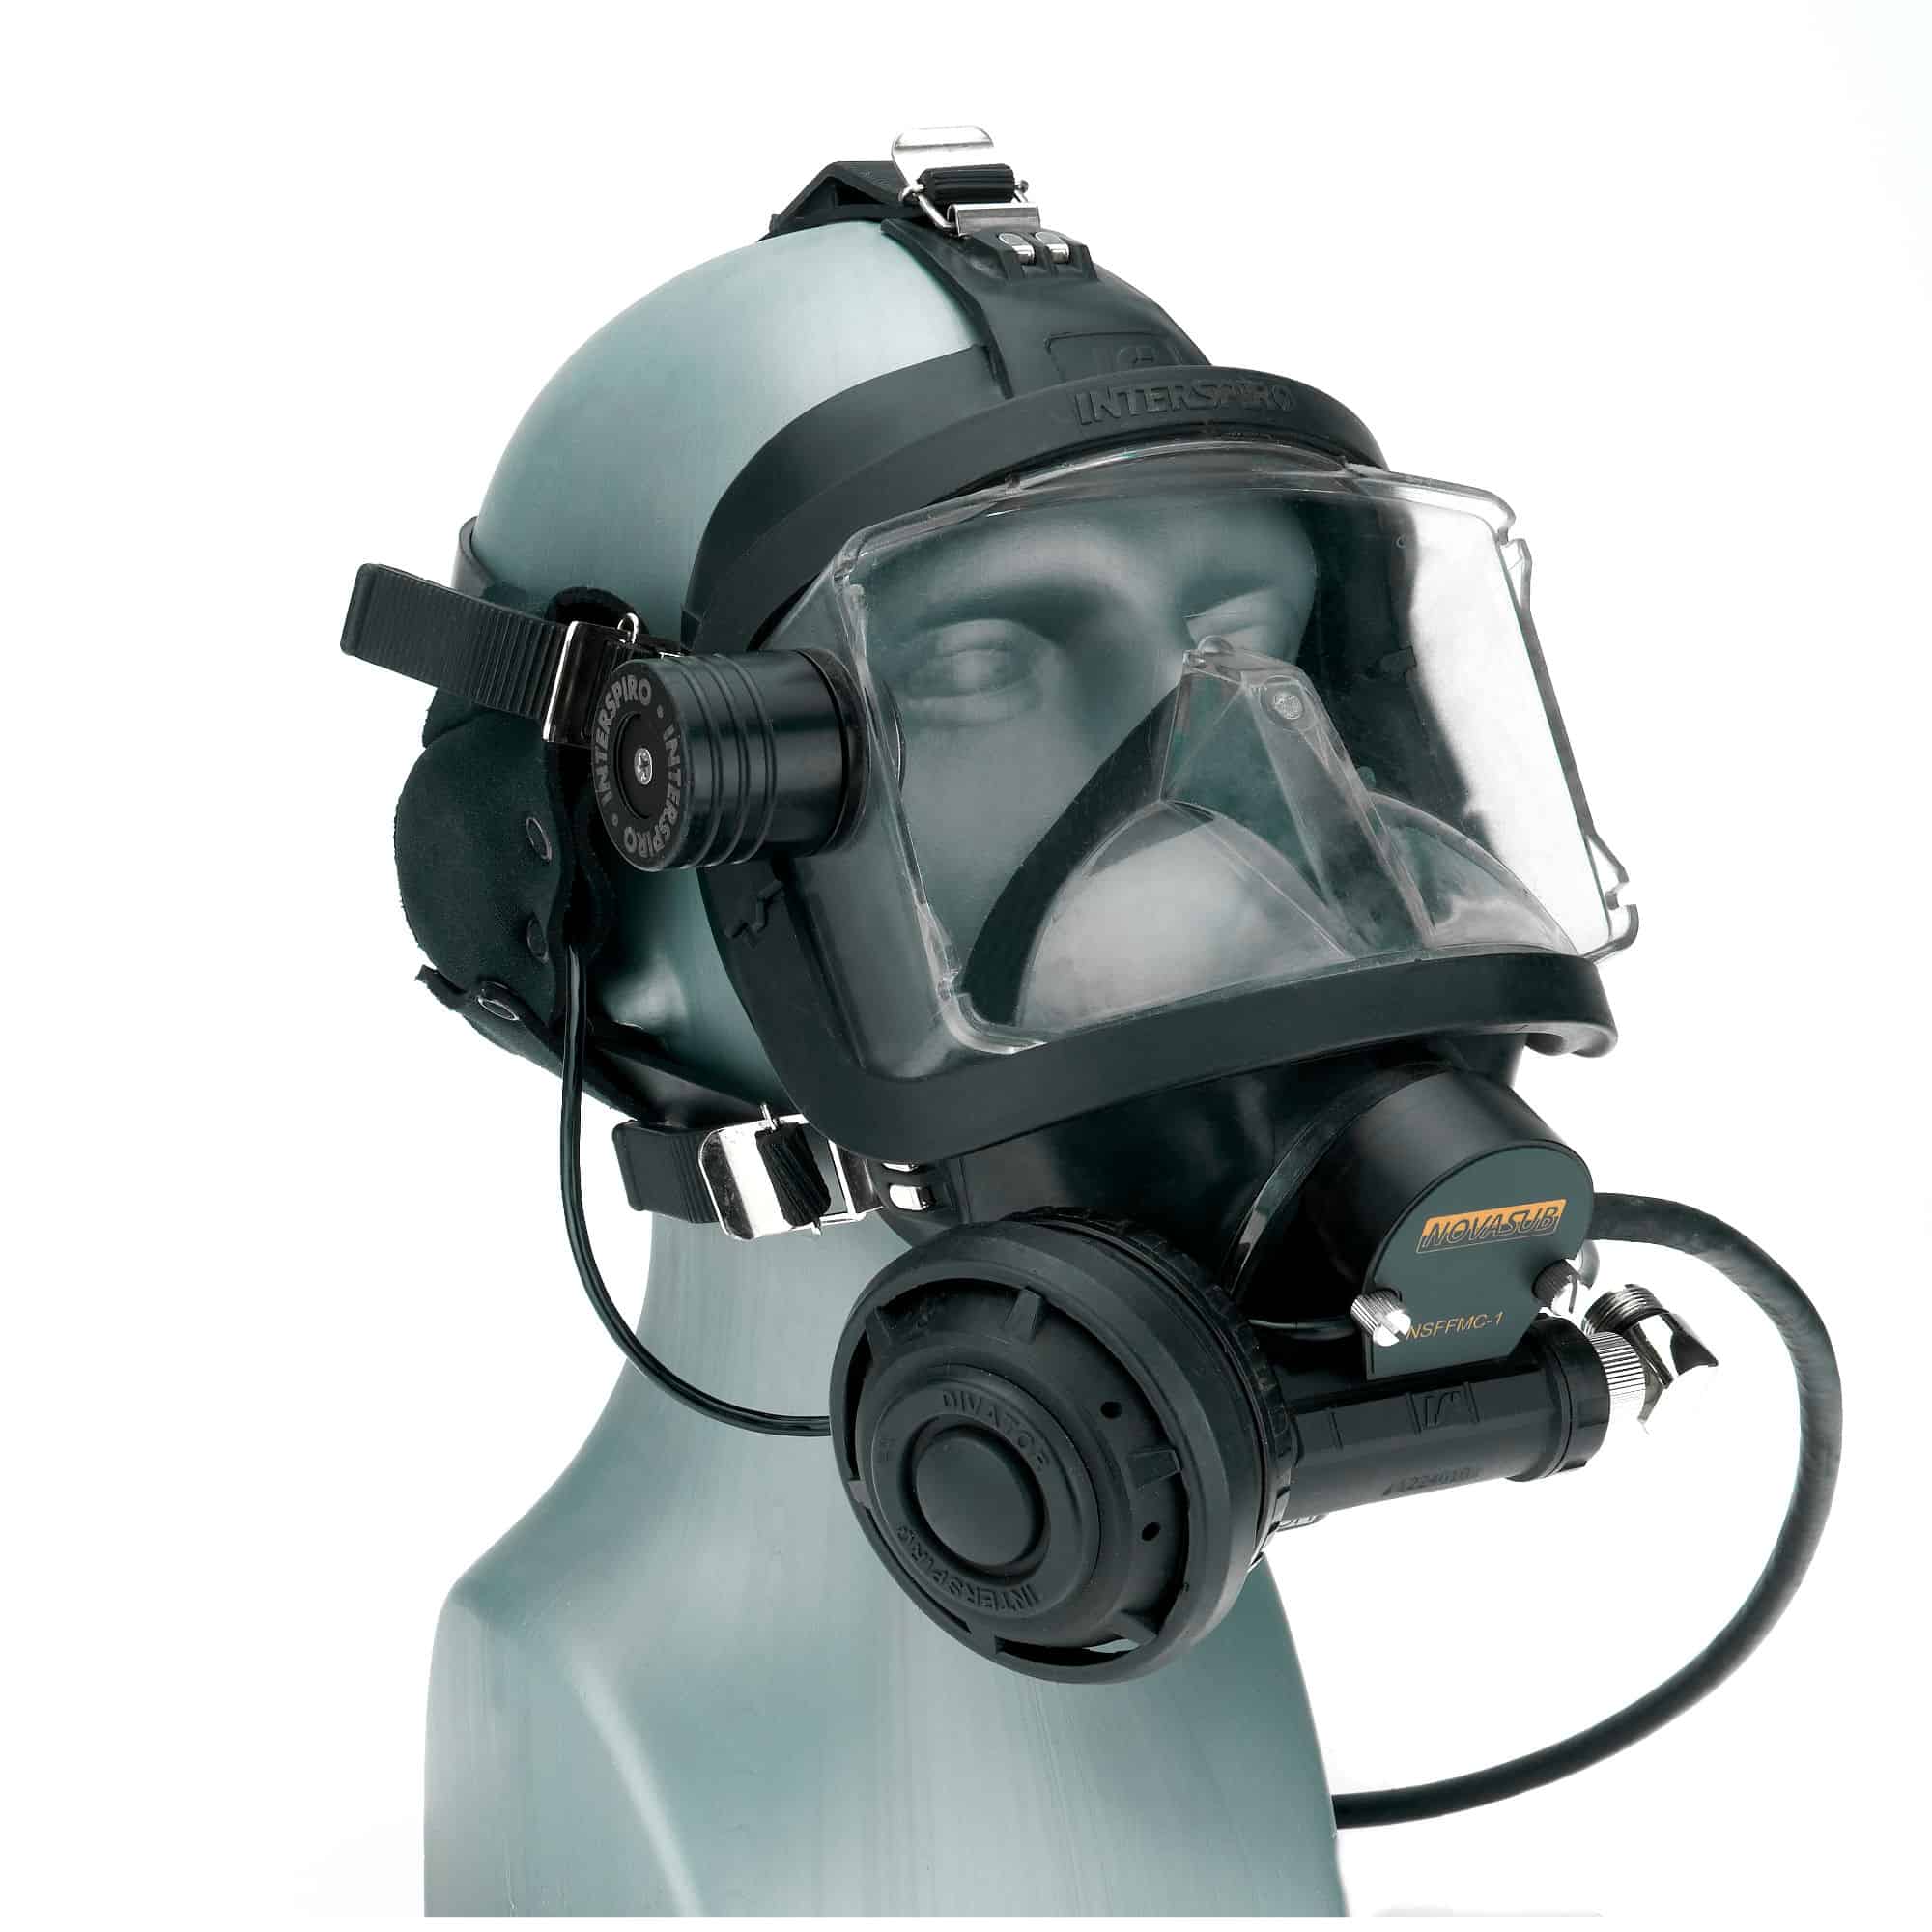 HERMES-1 - Full face mask communication set - MAIN